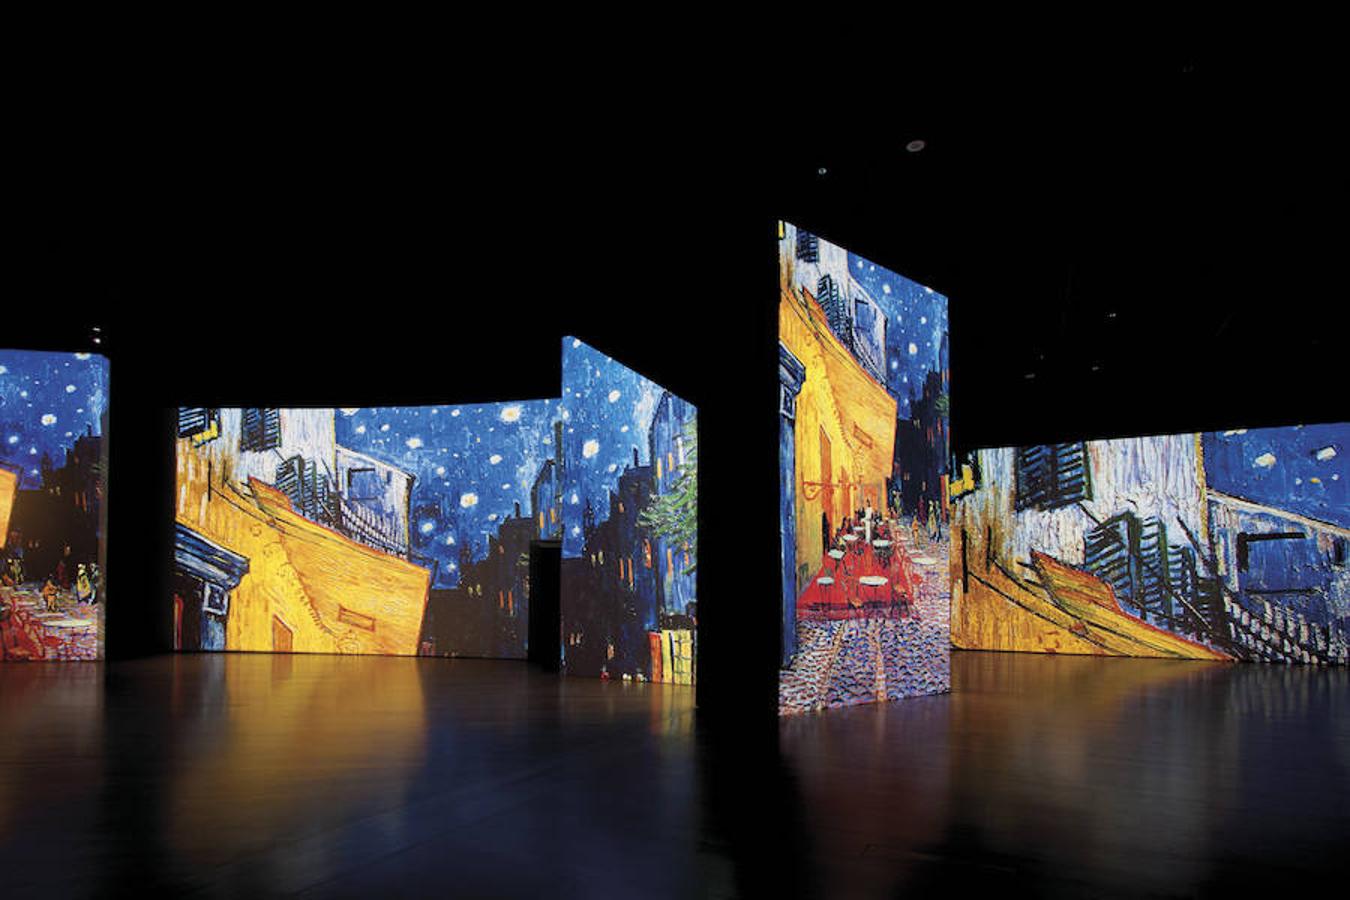 La experiencia combina 3.000 imágenes en movimiento, luz y música para sumergirse de lleno en el universo del pintor holandés.